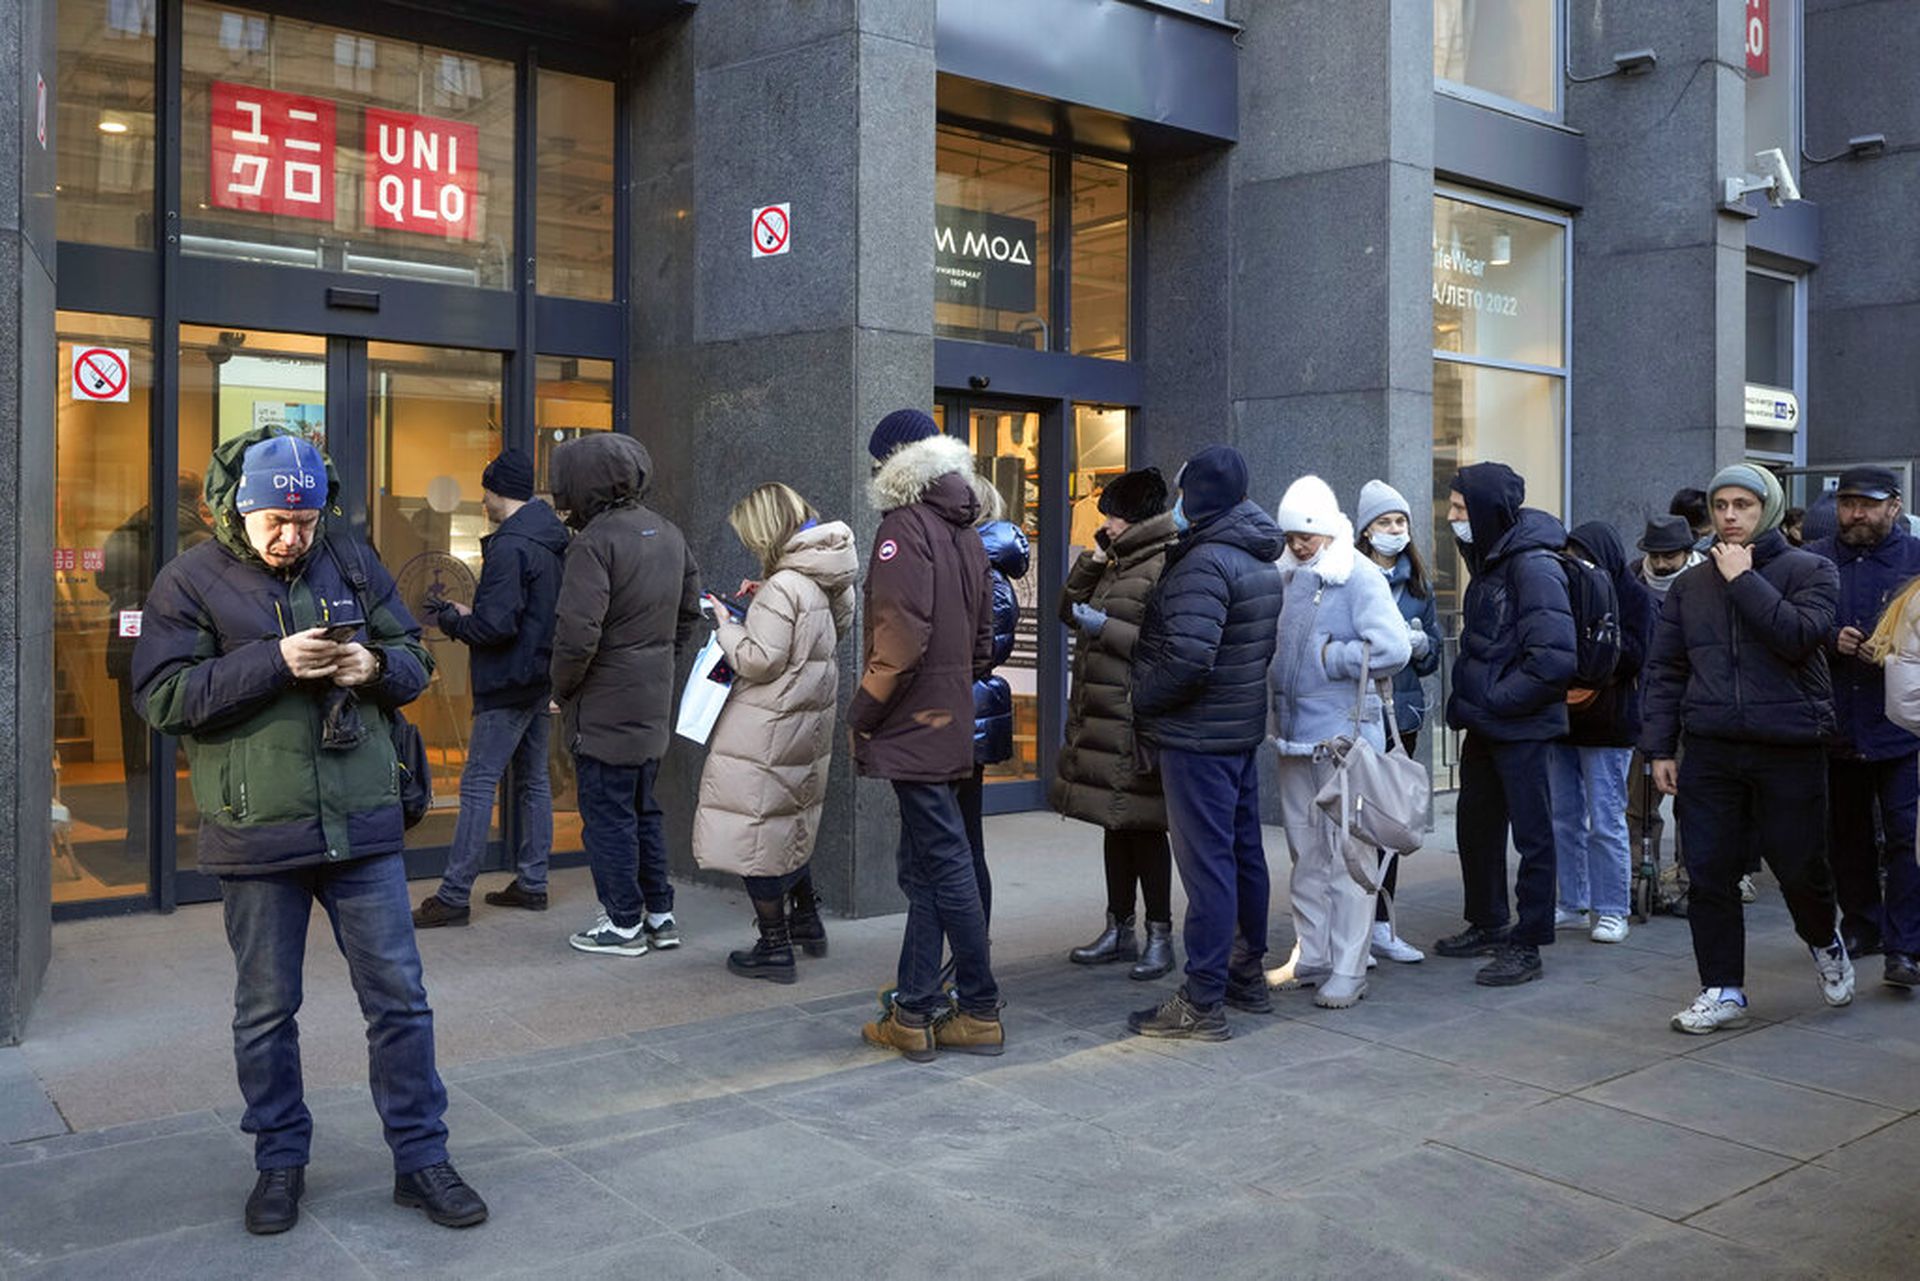 UNIQLO將暫停俄羅斯業務　顧客排隊搶購多間分店有人龍